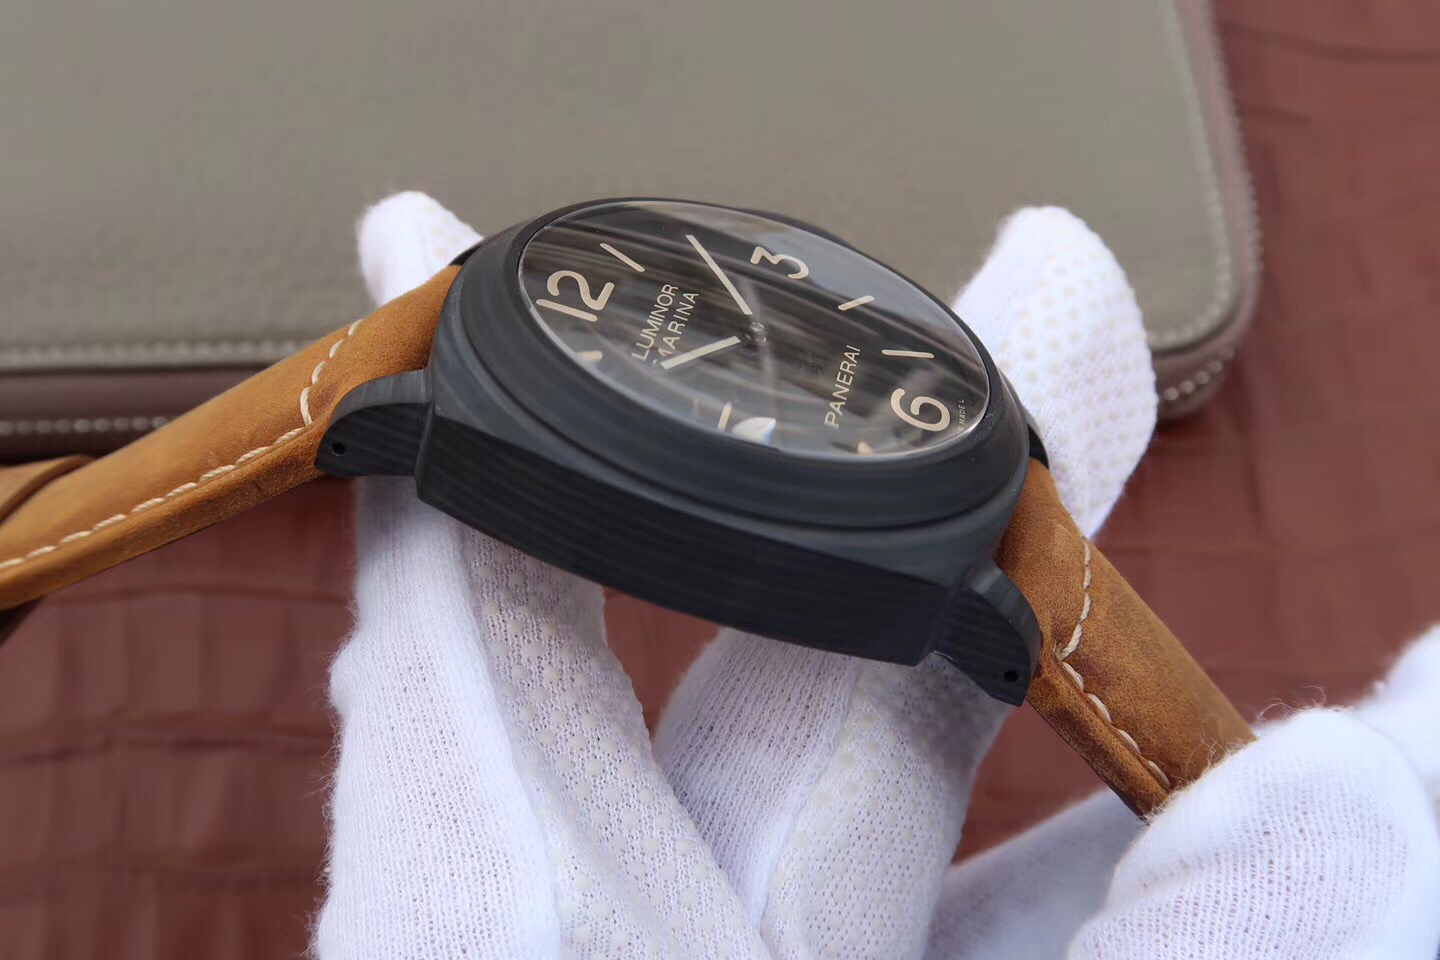 2023041602200891 - 復刻手錶沛納海到哪裏買 XF沛納海PAM417碳纖限量版￥2980